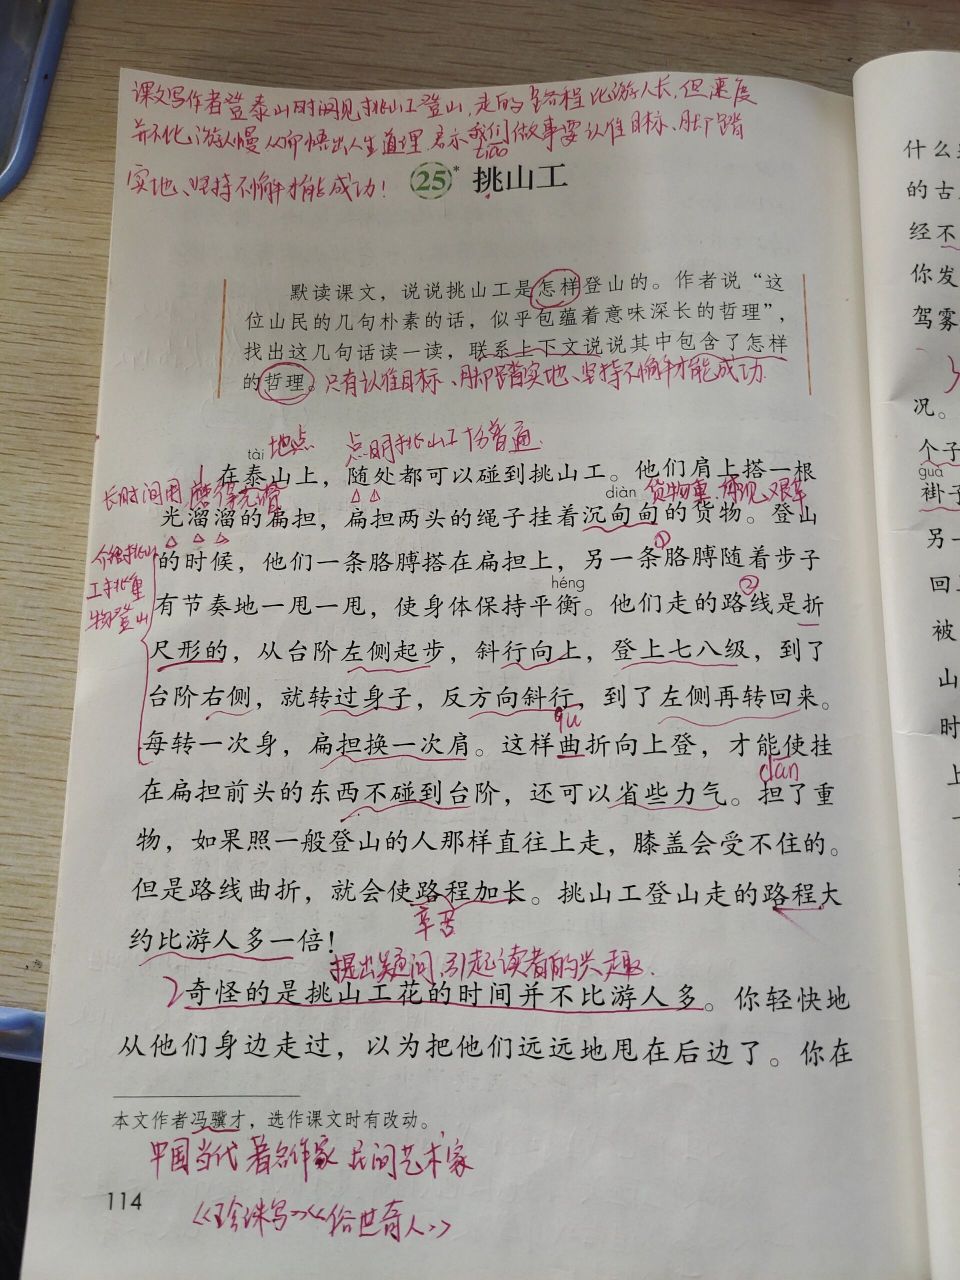 四年级下册25课《挑山工》课堂笔记 《挑山工》是著名作家冯骥才的